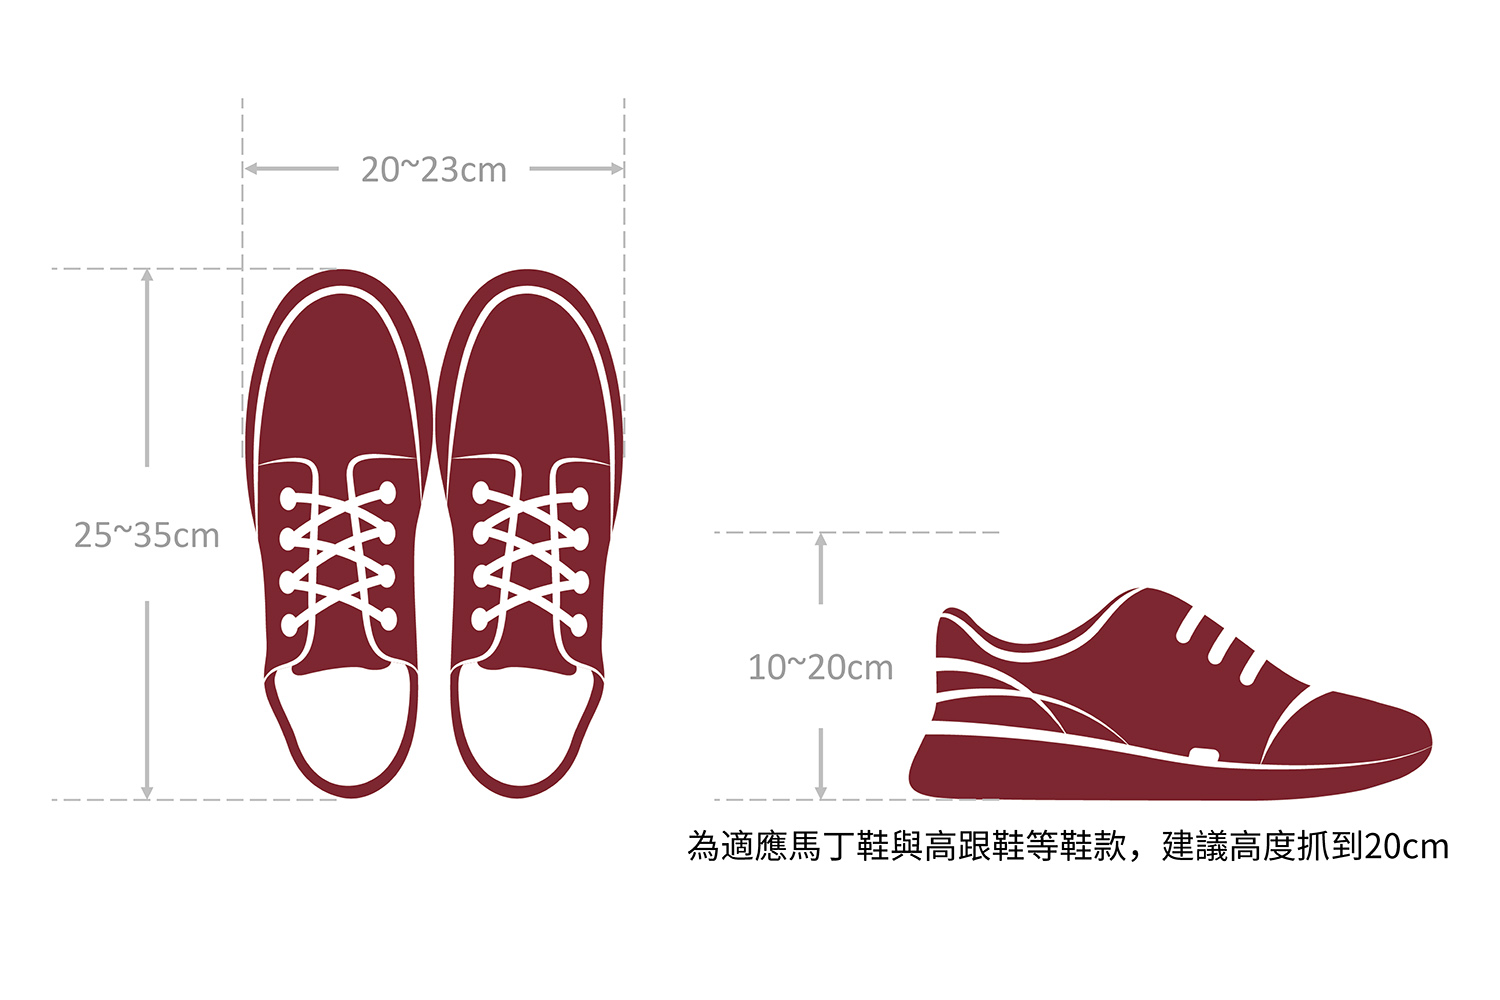 鞋子常見的尺寸範圍;